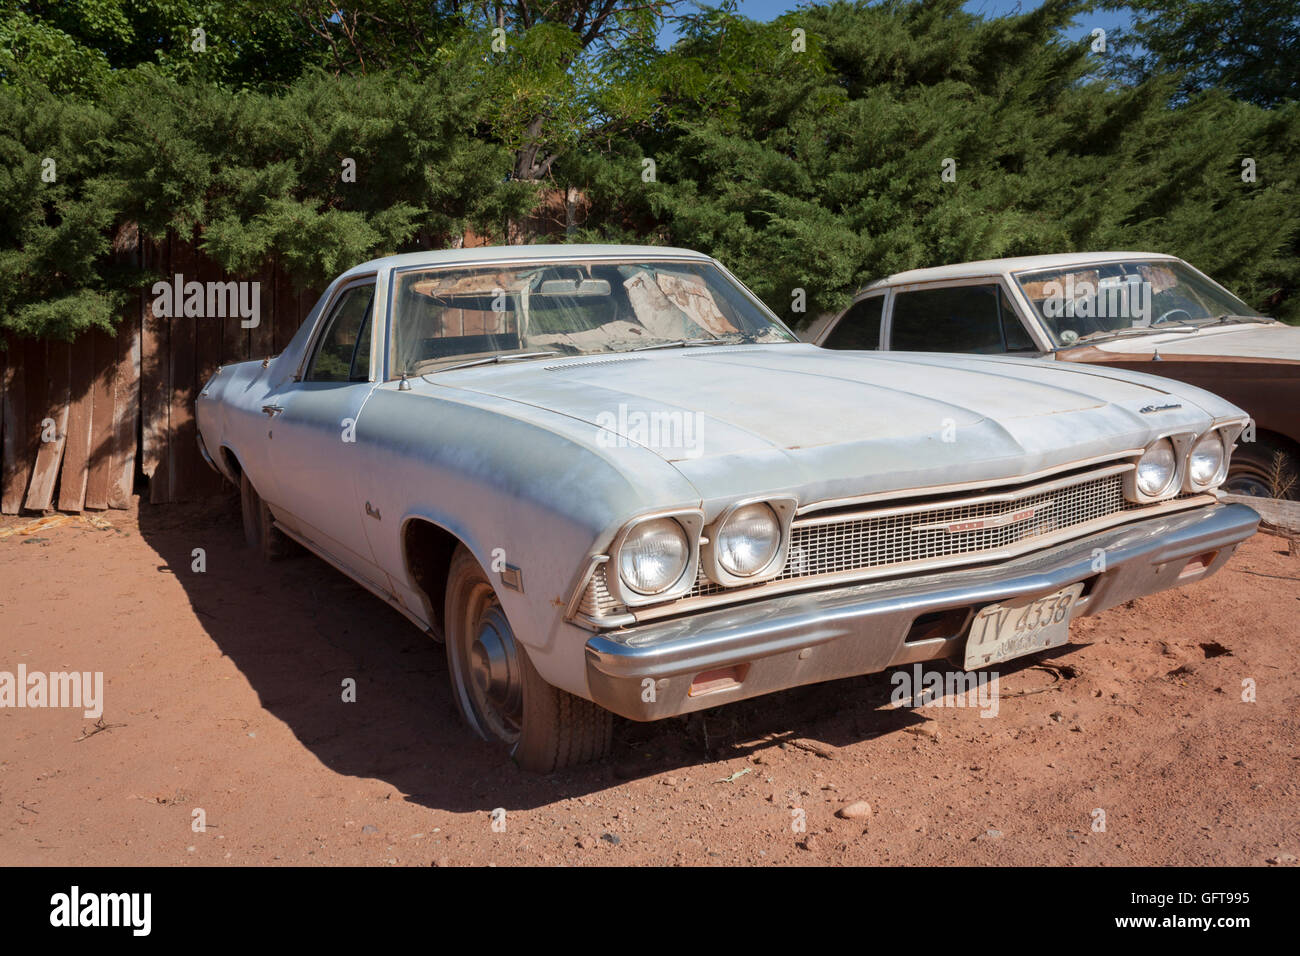 abandoned 1969 Chevrolet Chevelle in Moab Utah Stock Photo